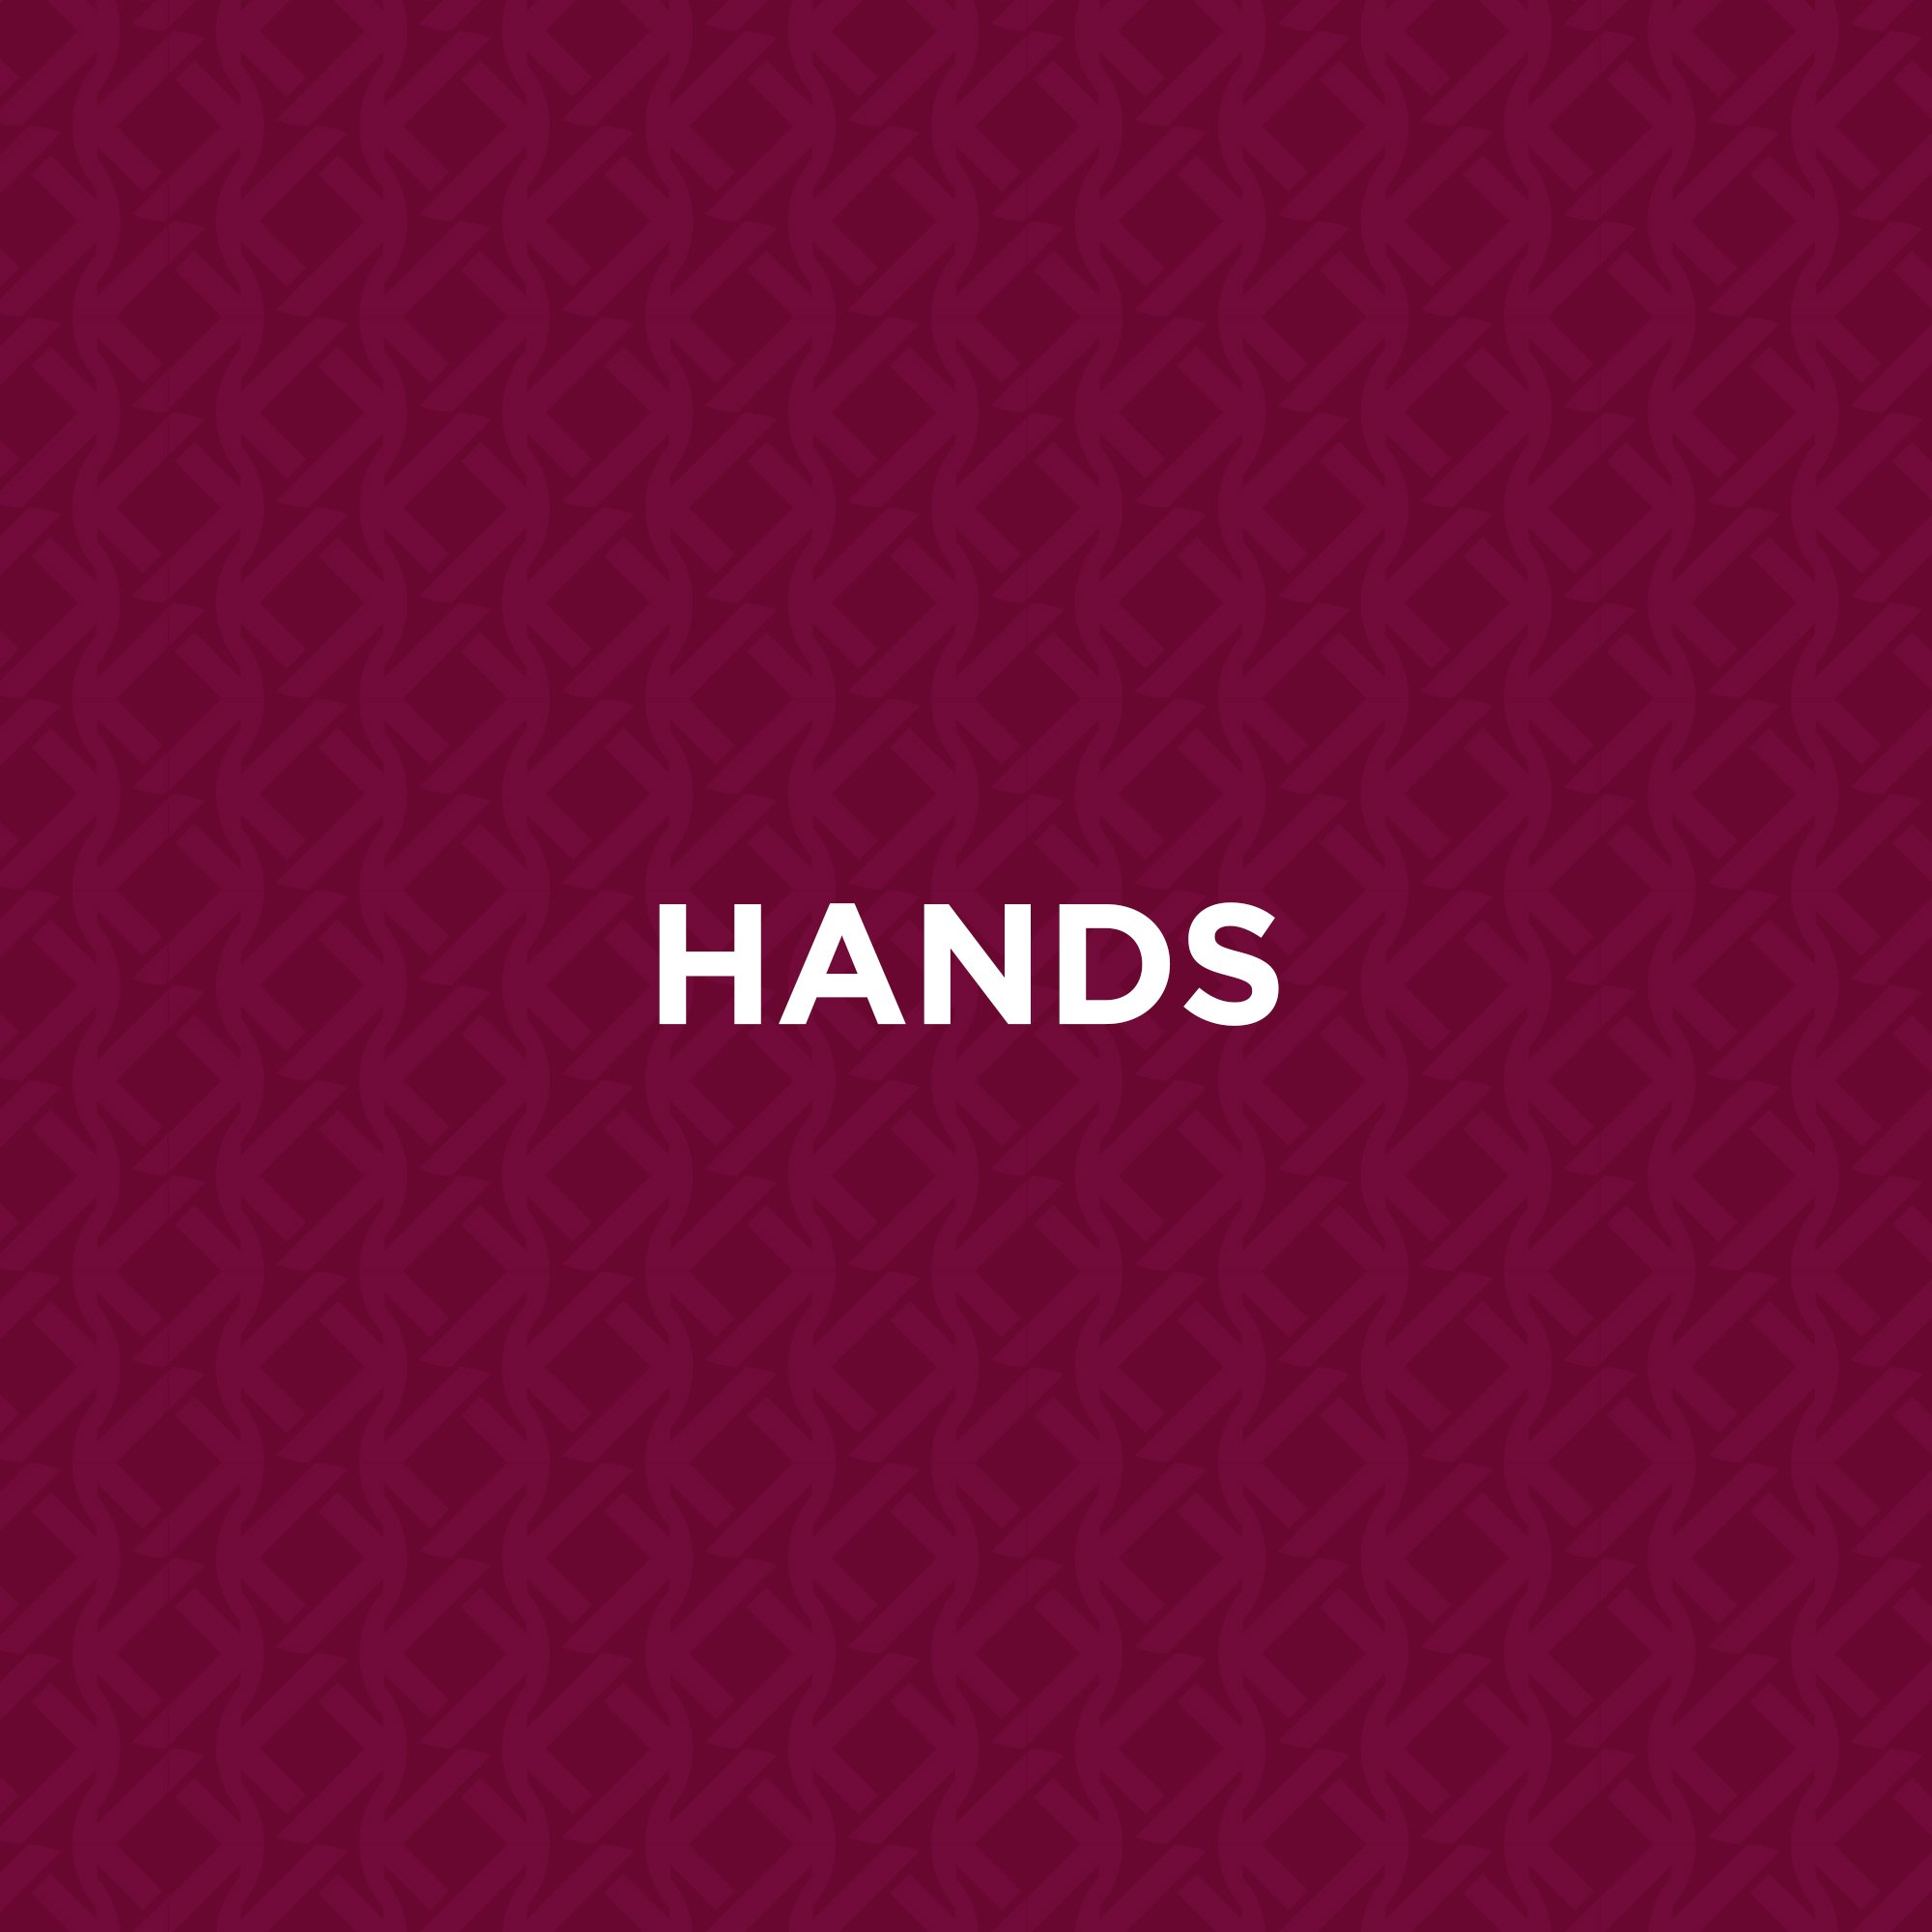 Hands.jpg